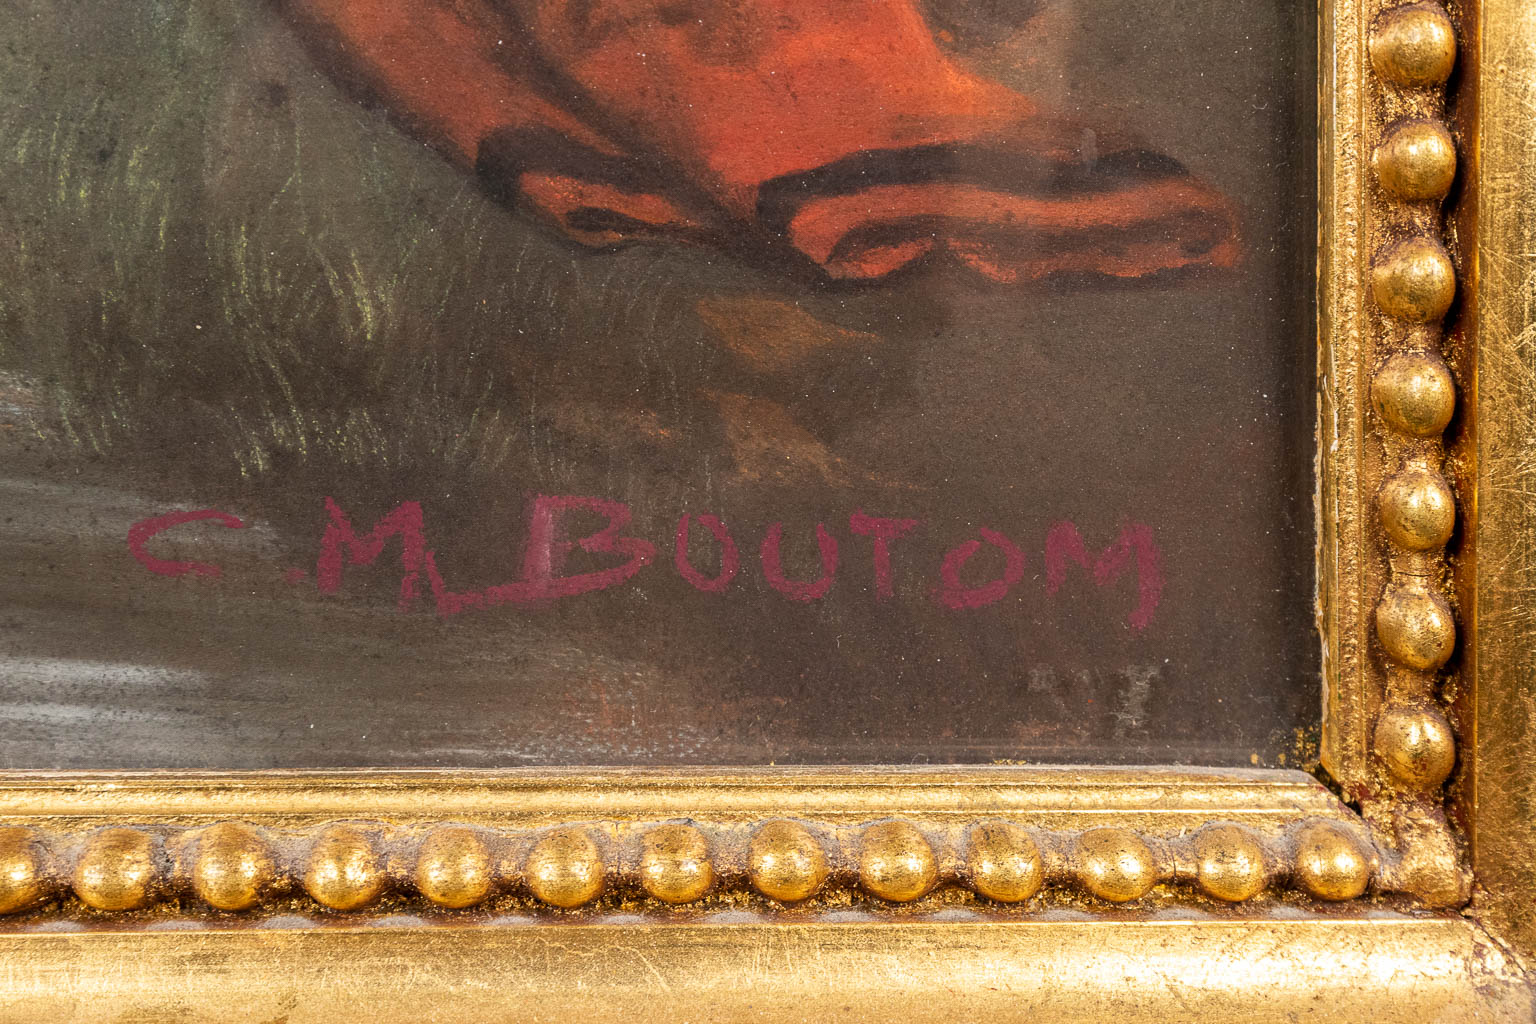 Naar Charles Marie BOUTON (1781-1853) Dame met de geit, mixed media op doek. (46,5 x 56 cm)